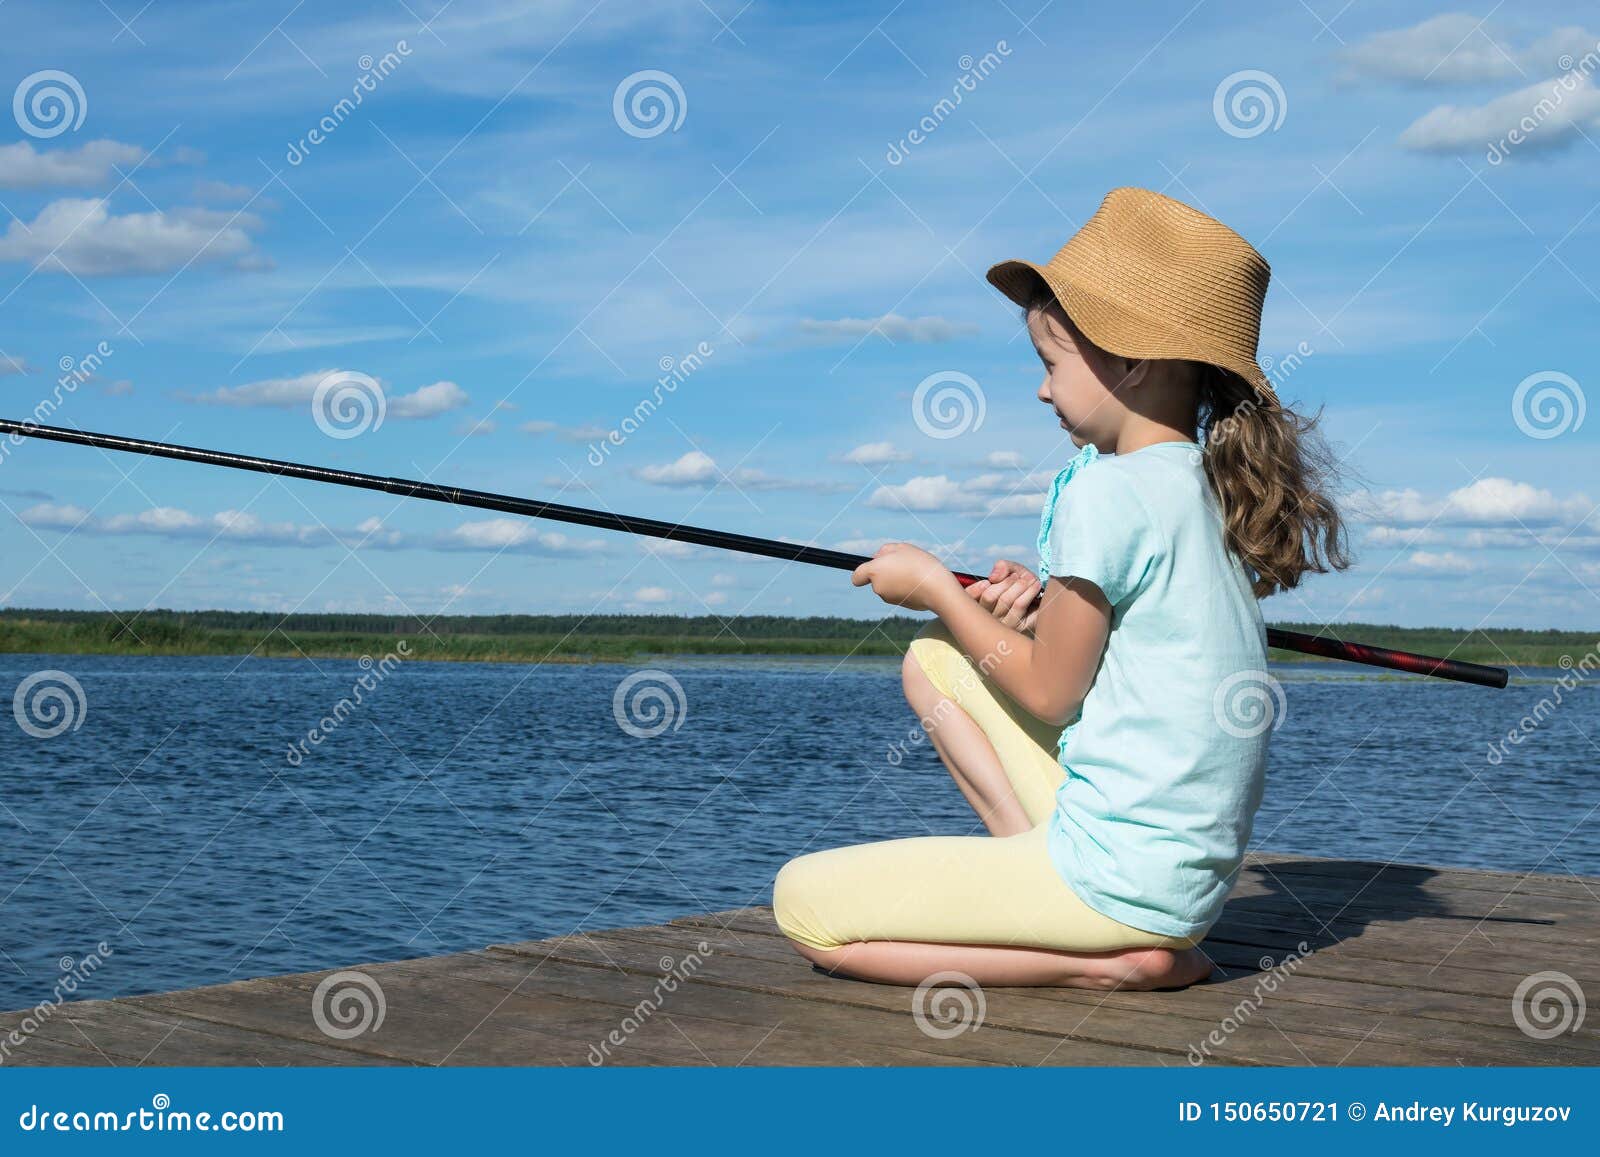 https://thumbs.dreamstime.com/z/little-girl-hat-fishing-lake-sunny-day-150650721.jpg